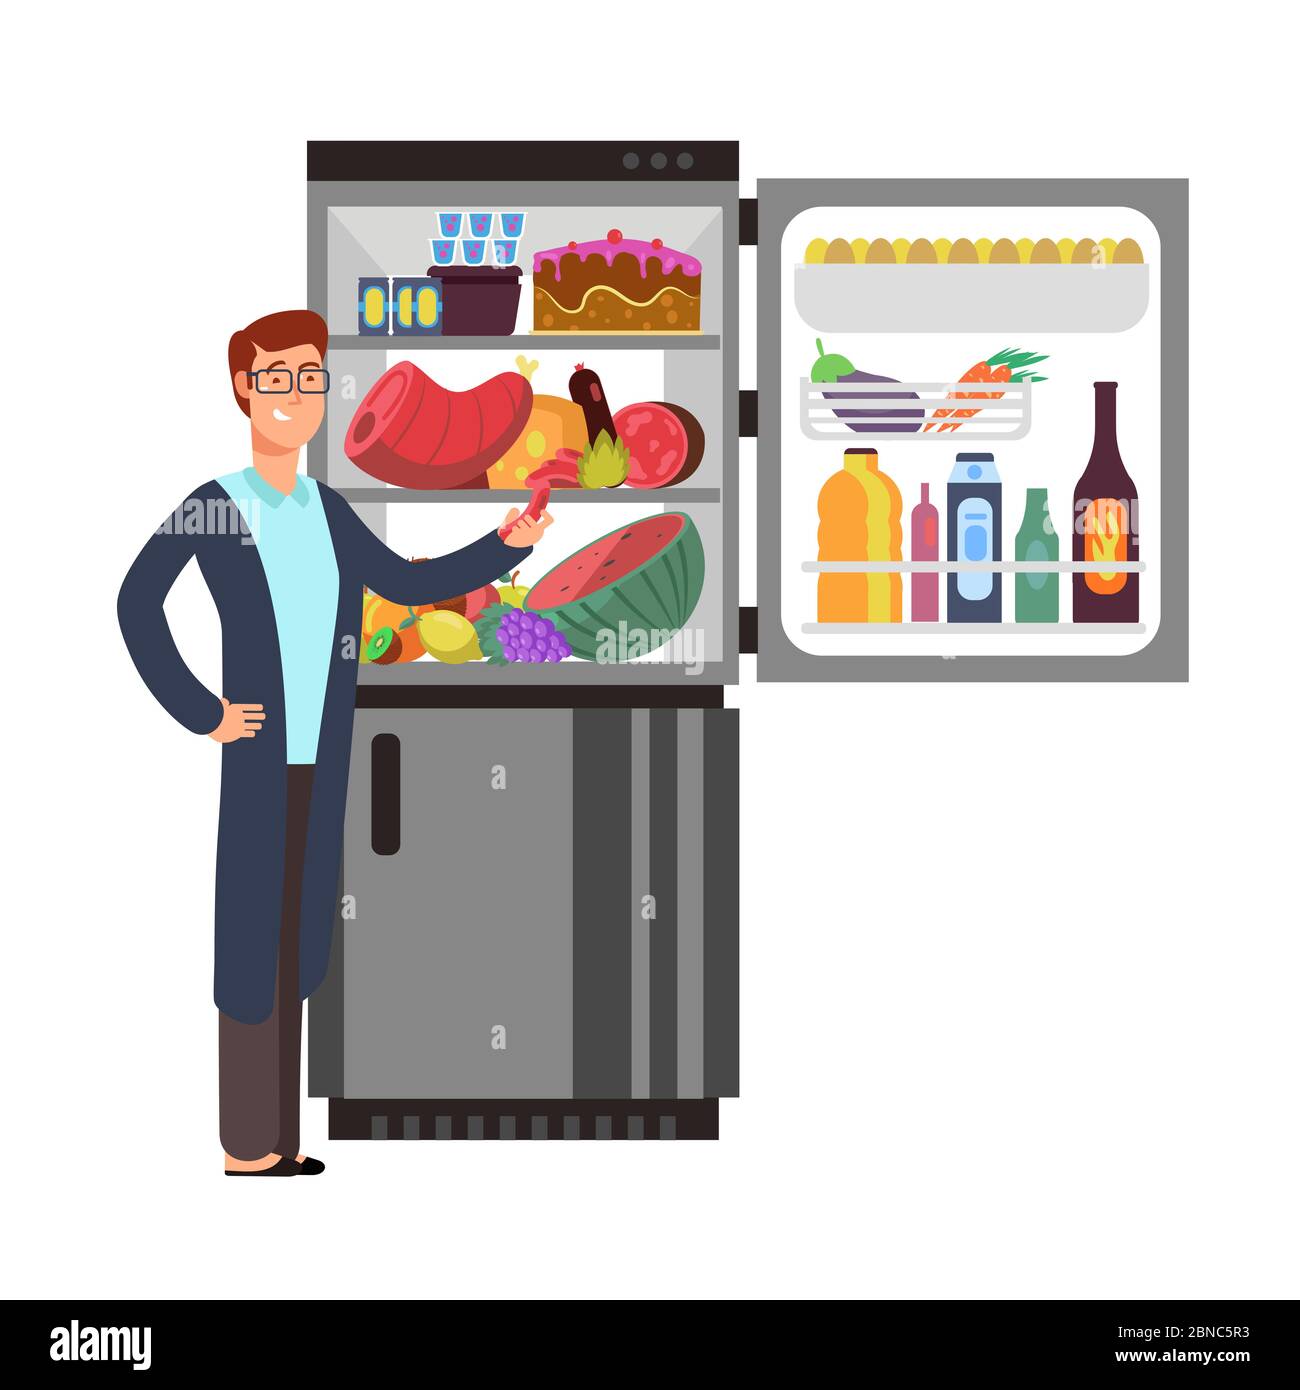 Mann denkt, snacking Wurst am Kühlschrank mit ungesunden Lebensmitteln. Menschen essen in der Nacht Vektor-Konzept. Illustration von männlichen Hunger und Kühlschrank mit Essen und Trinken Stock Vektor